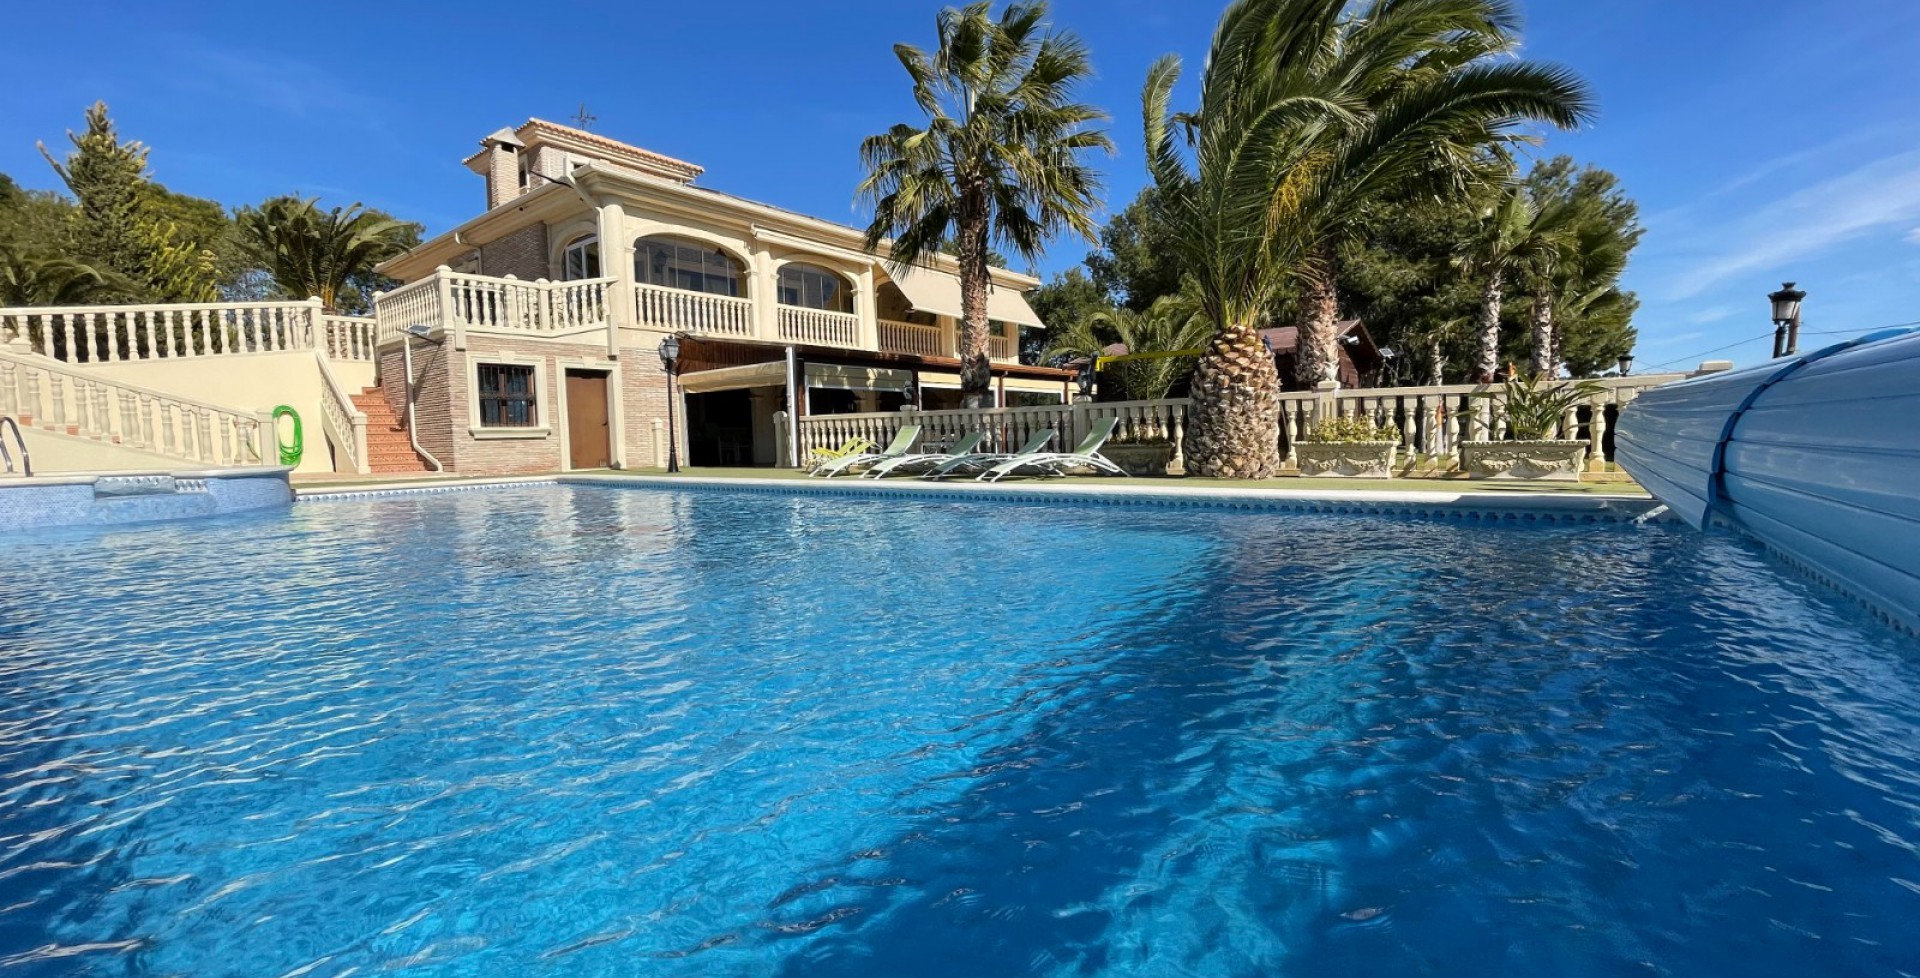 Swimming pool in Molina del Segura